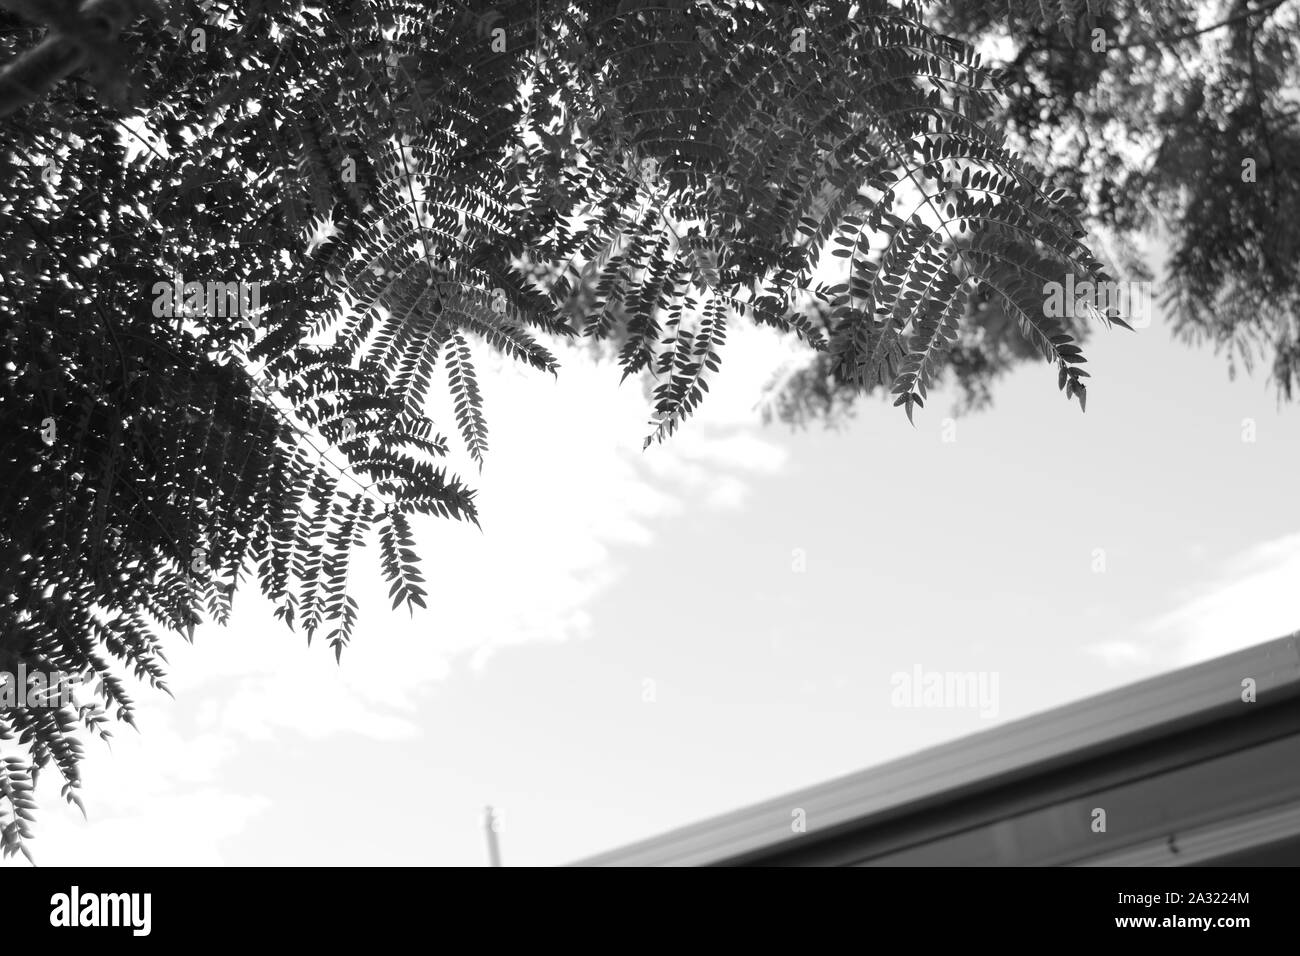 Photographie en noir et blanc de fougères contre le ciel Banque D'Images